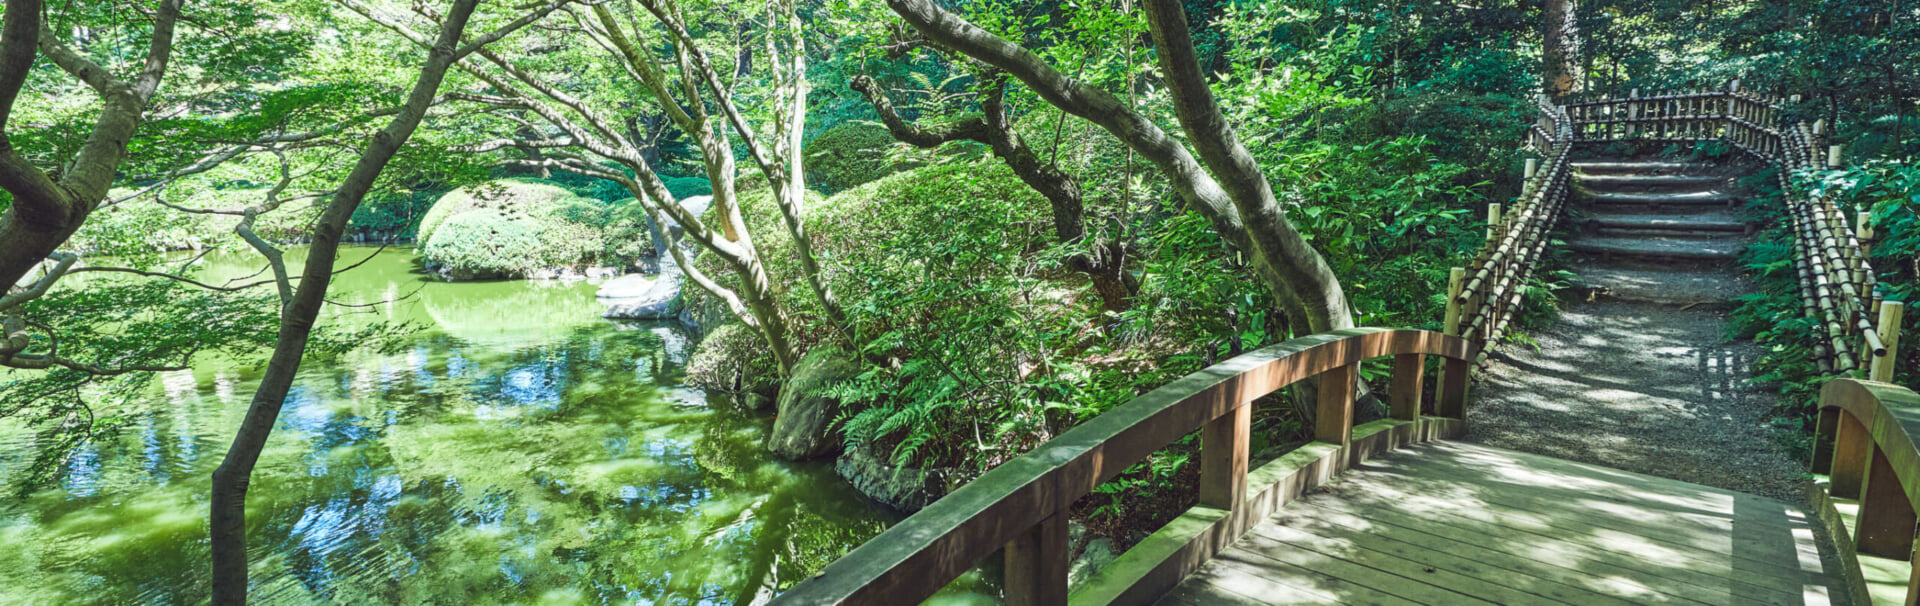 東京都庭園美術館の日本庭園の橋と池の写真